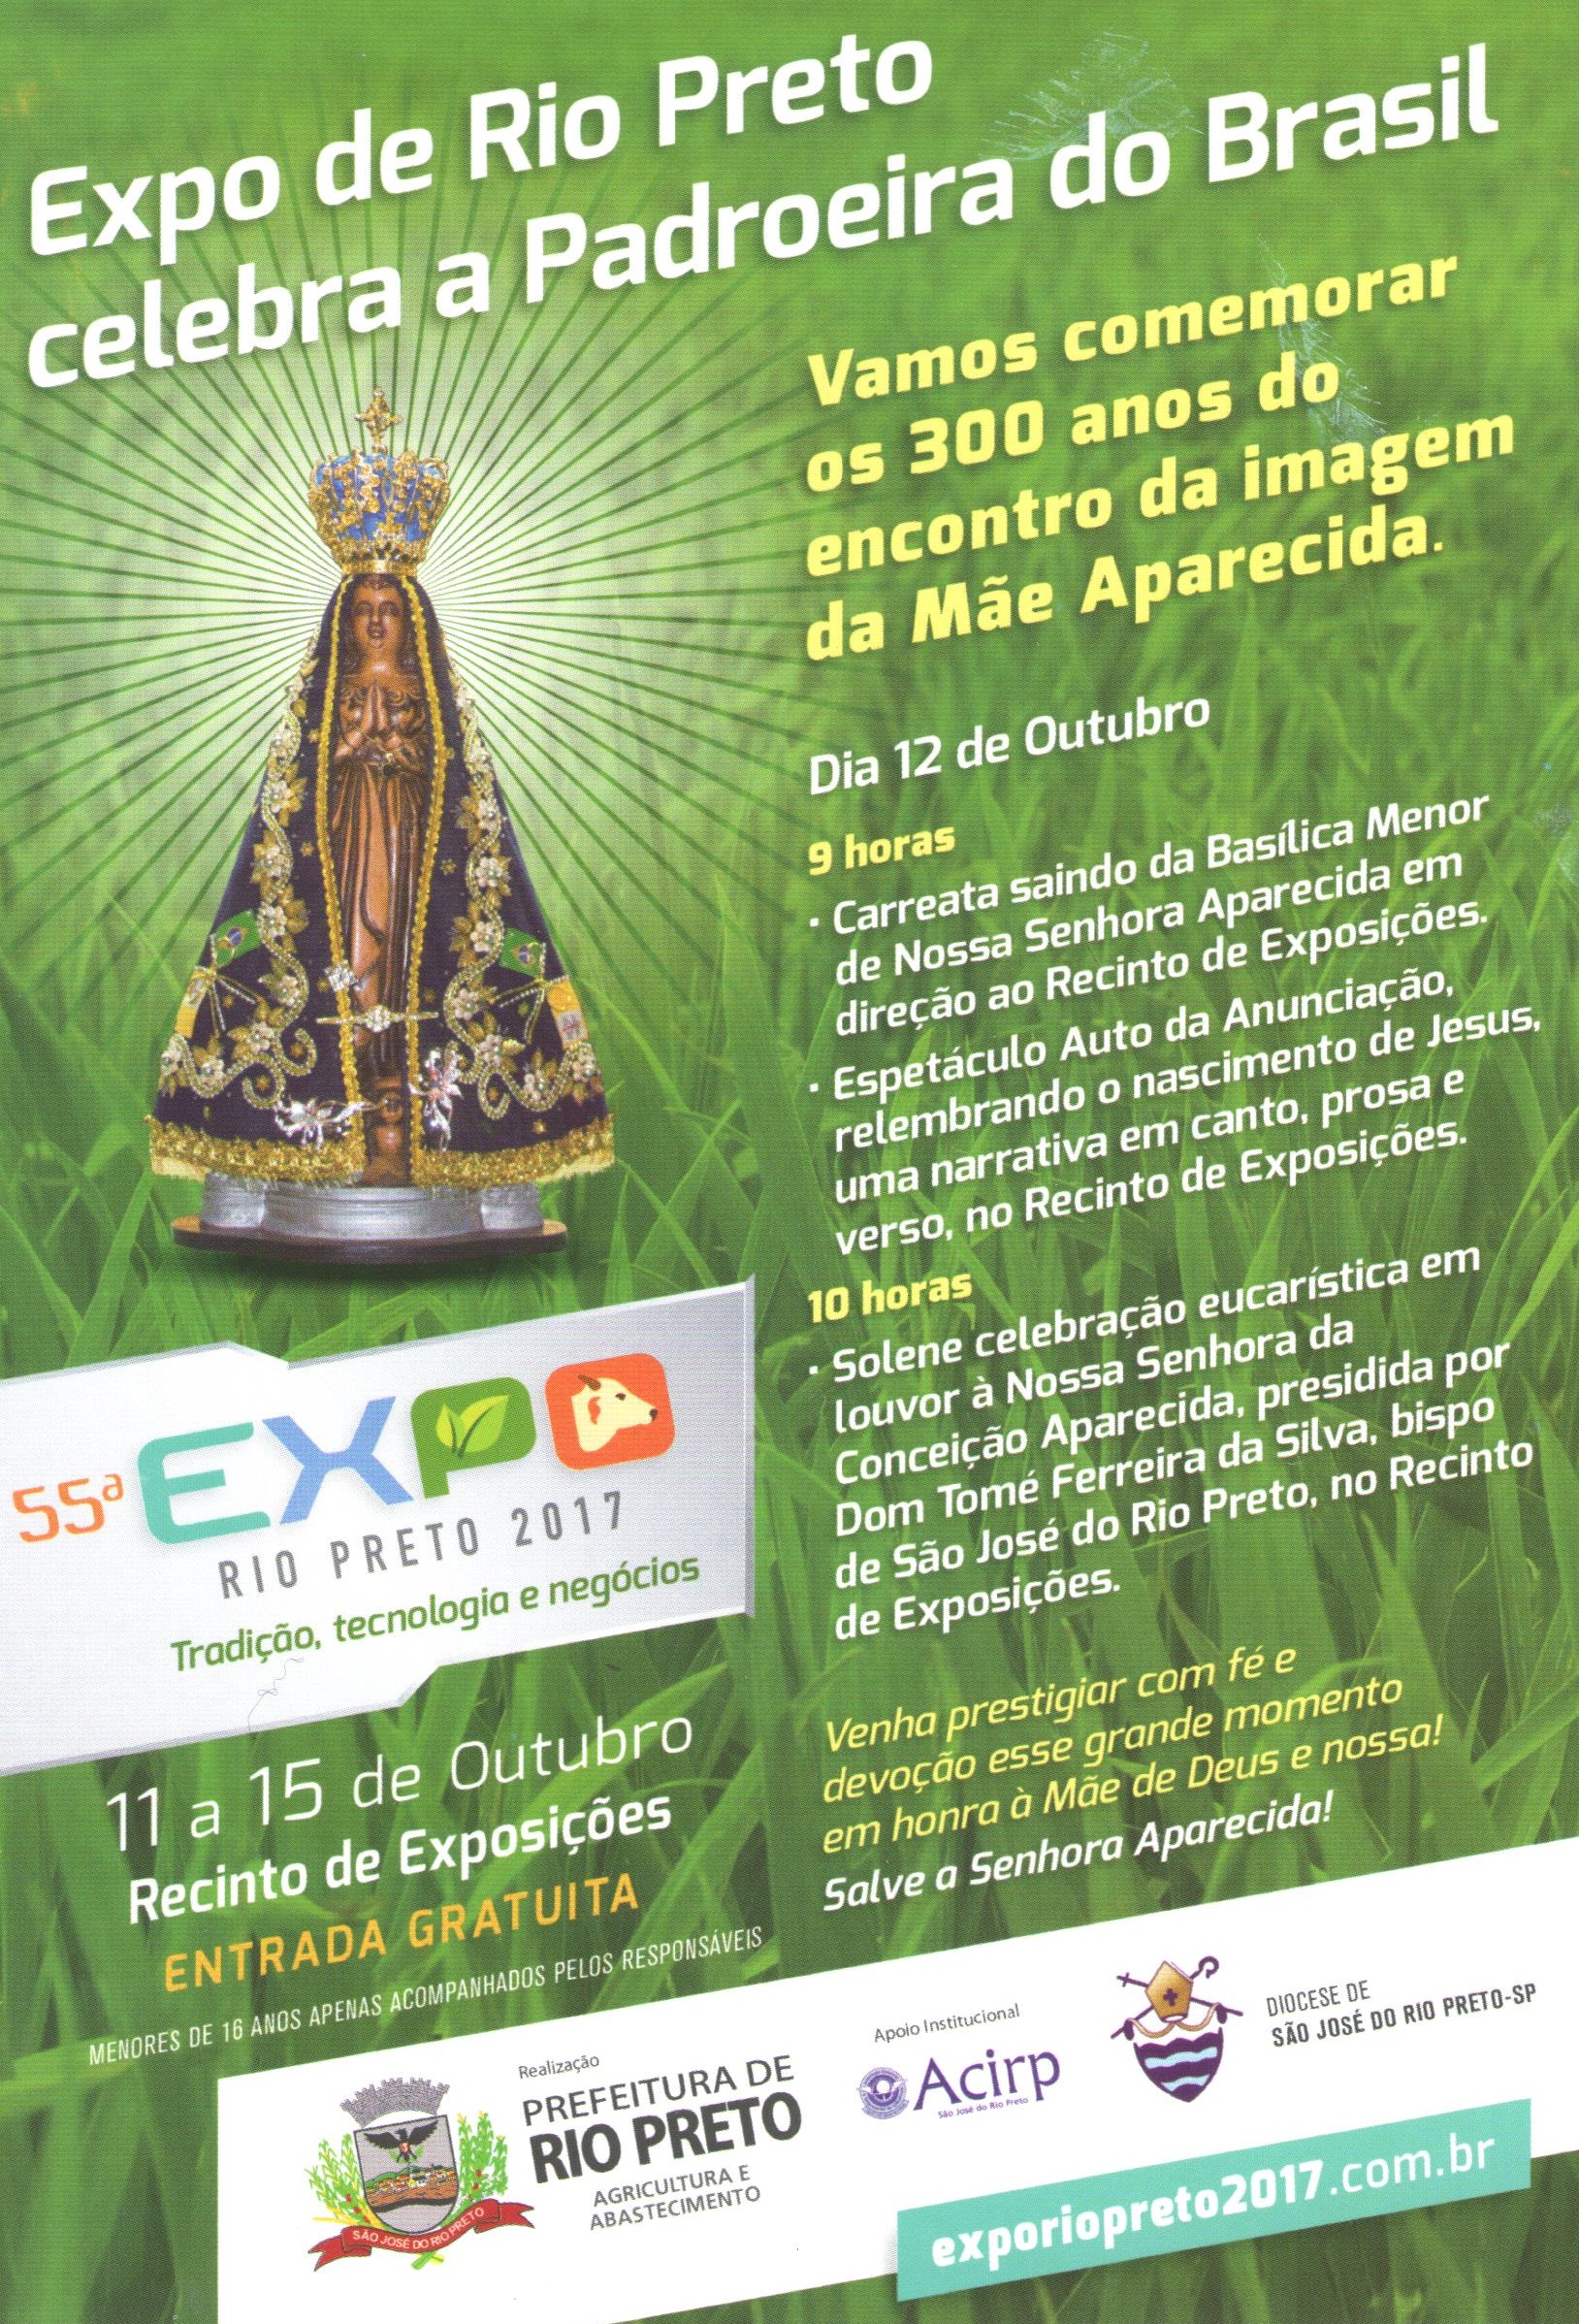 EXPO Rio Preto celebra a Padroeira do Brasil